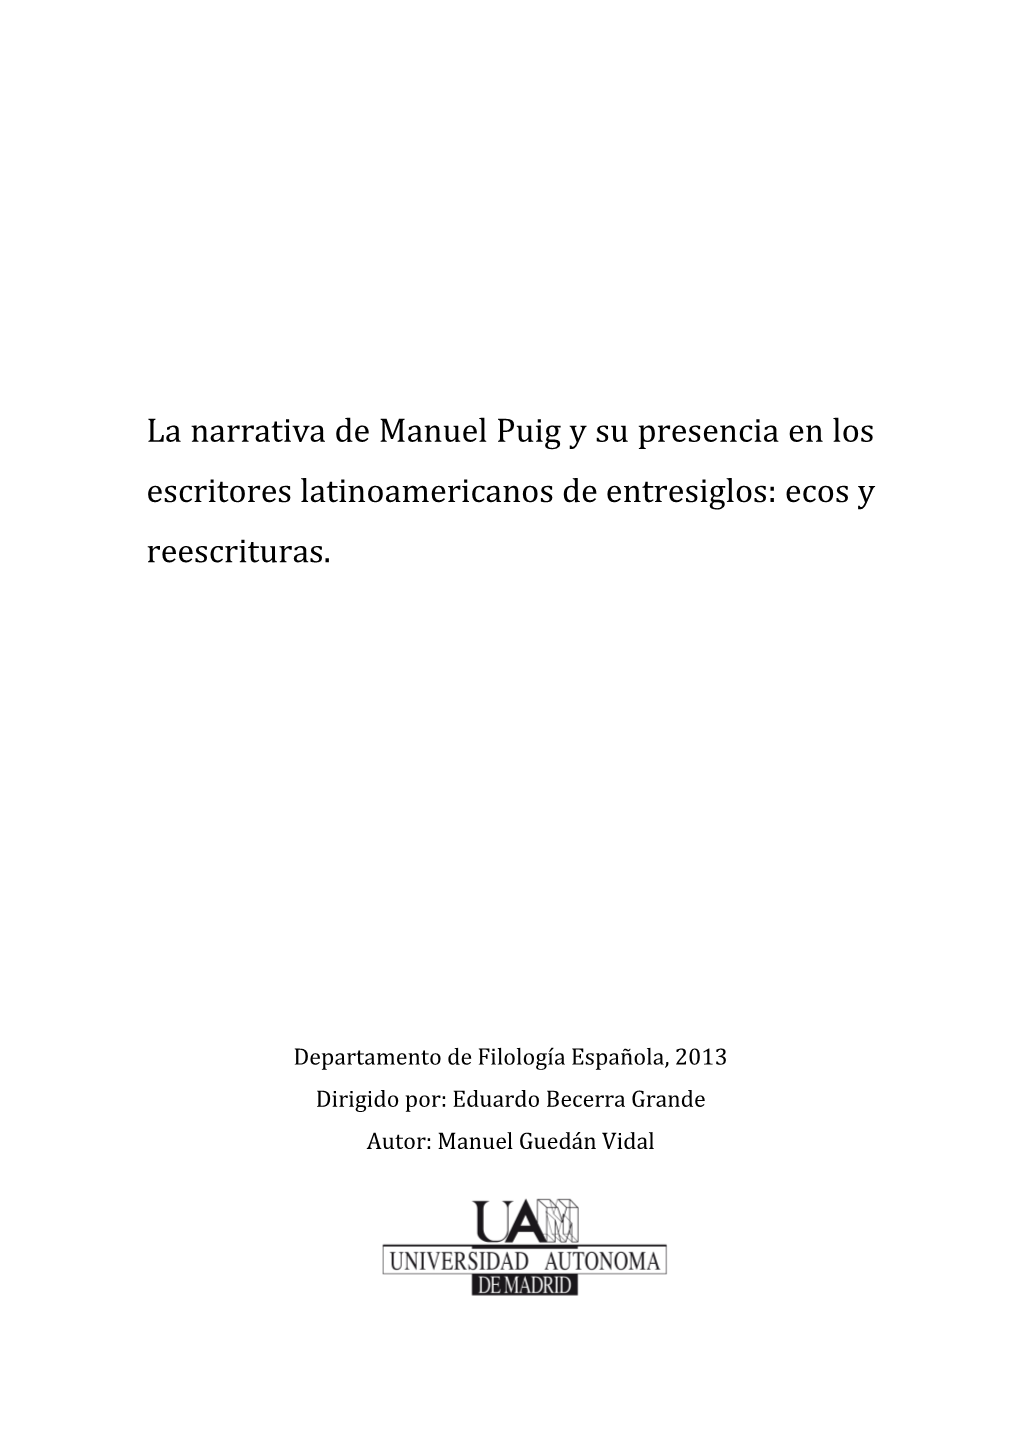 La Narrativa De Manuel Puig Y Su Presencia En Los Escritores Latinoamericanos De Entresiglos: Ecos Y Reescrituras